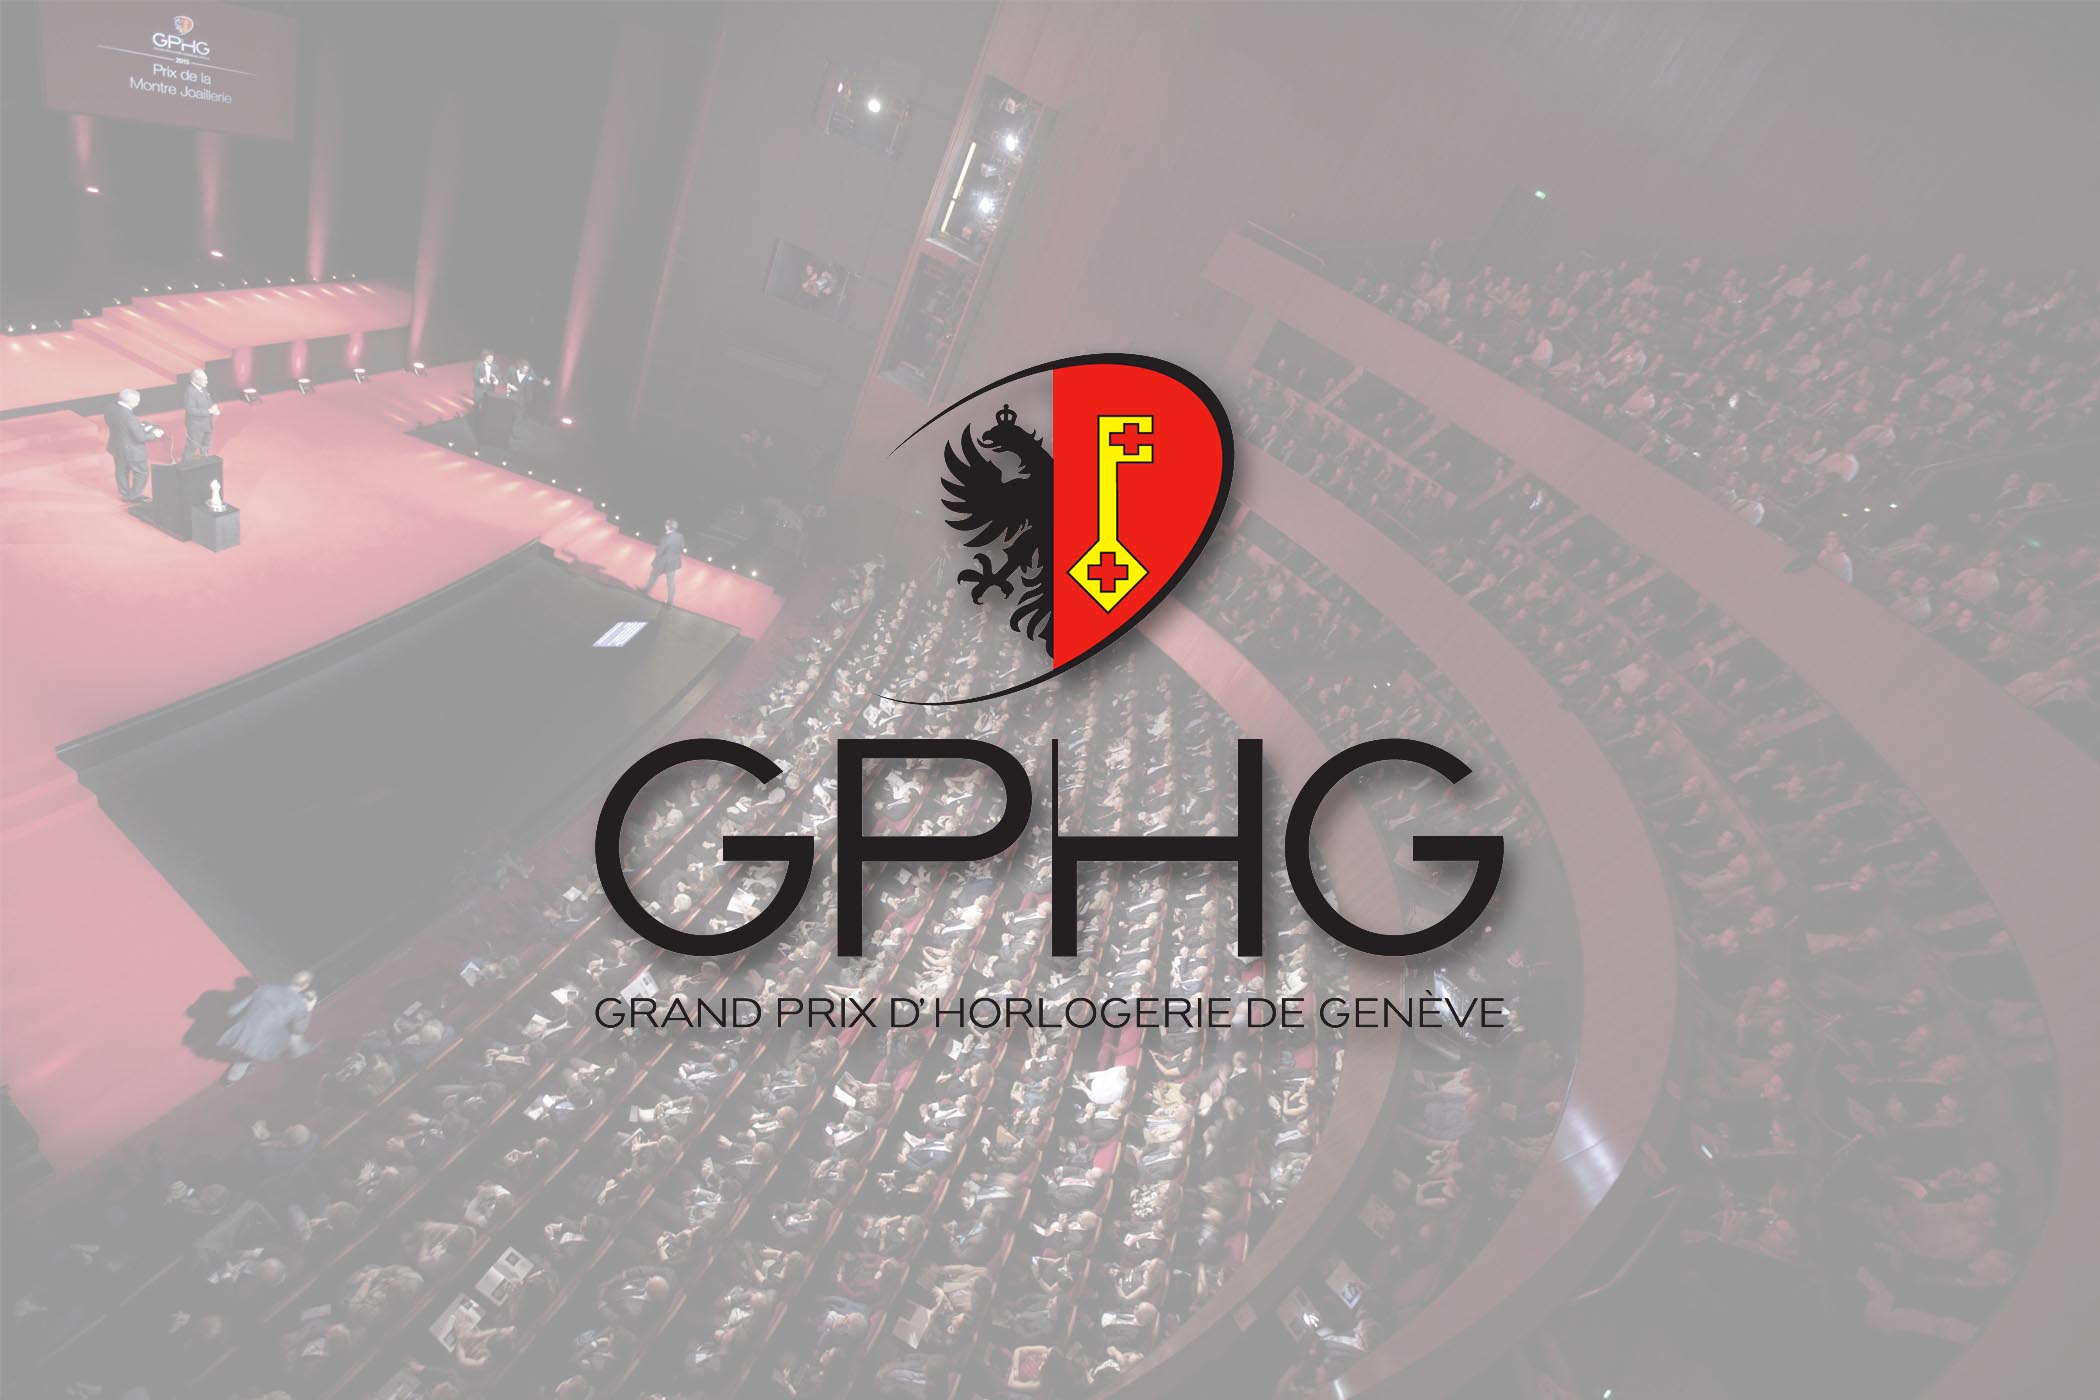 Công bố những quái kiệt góp mặt trong chung kết GPHG 2019 Giải Oscar trong thế giới chế tác đồng hồ